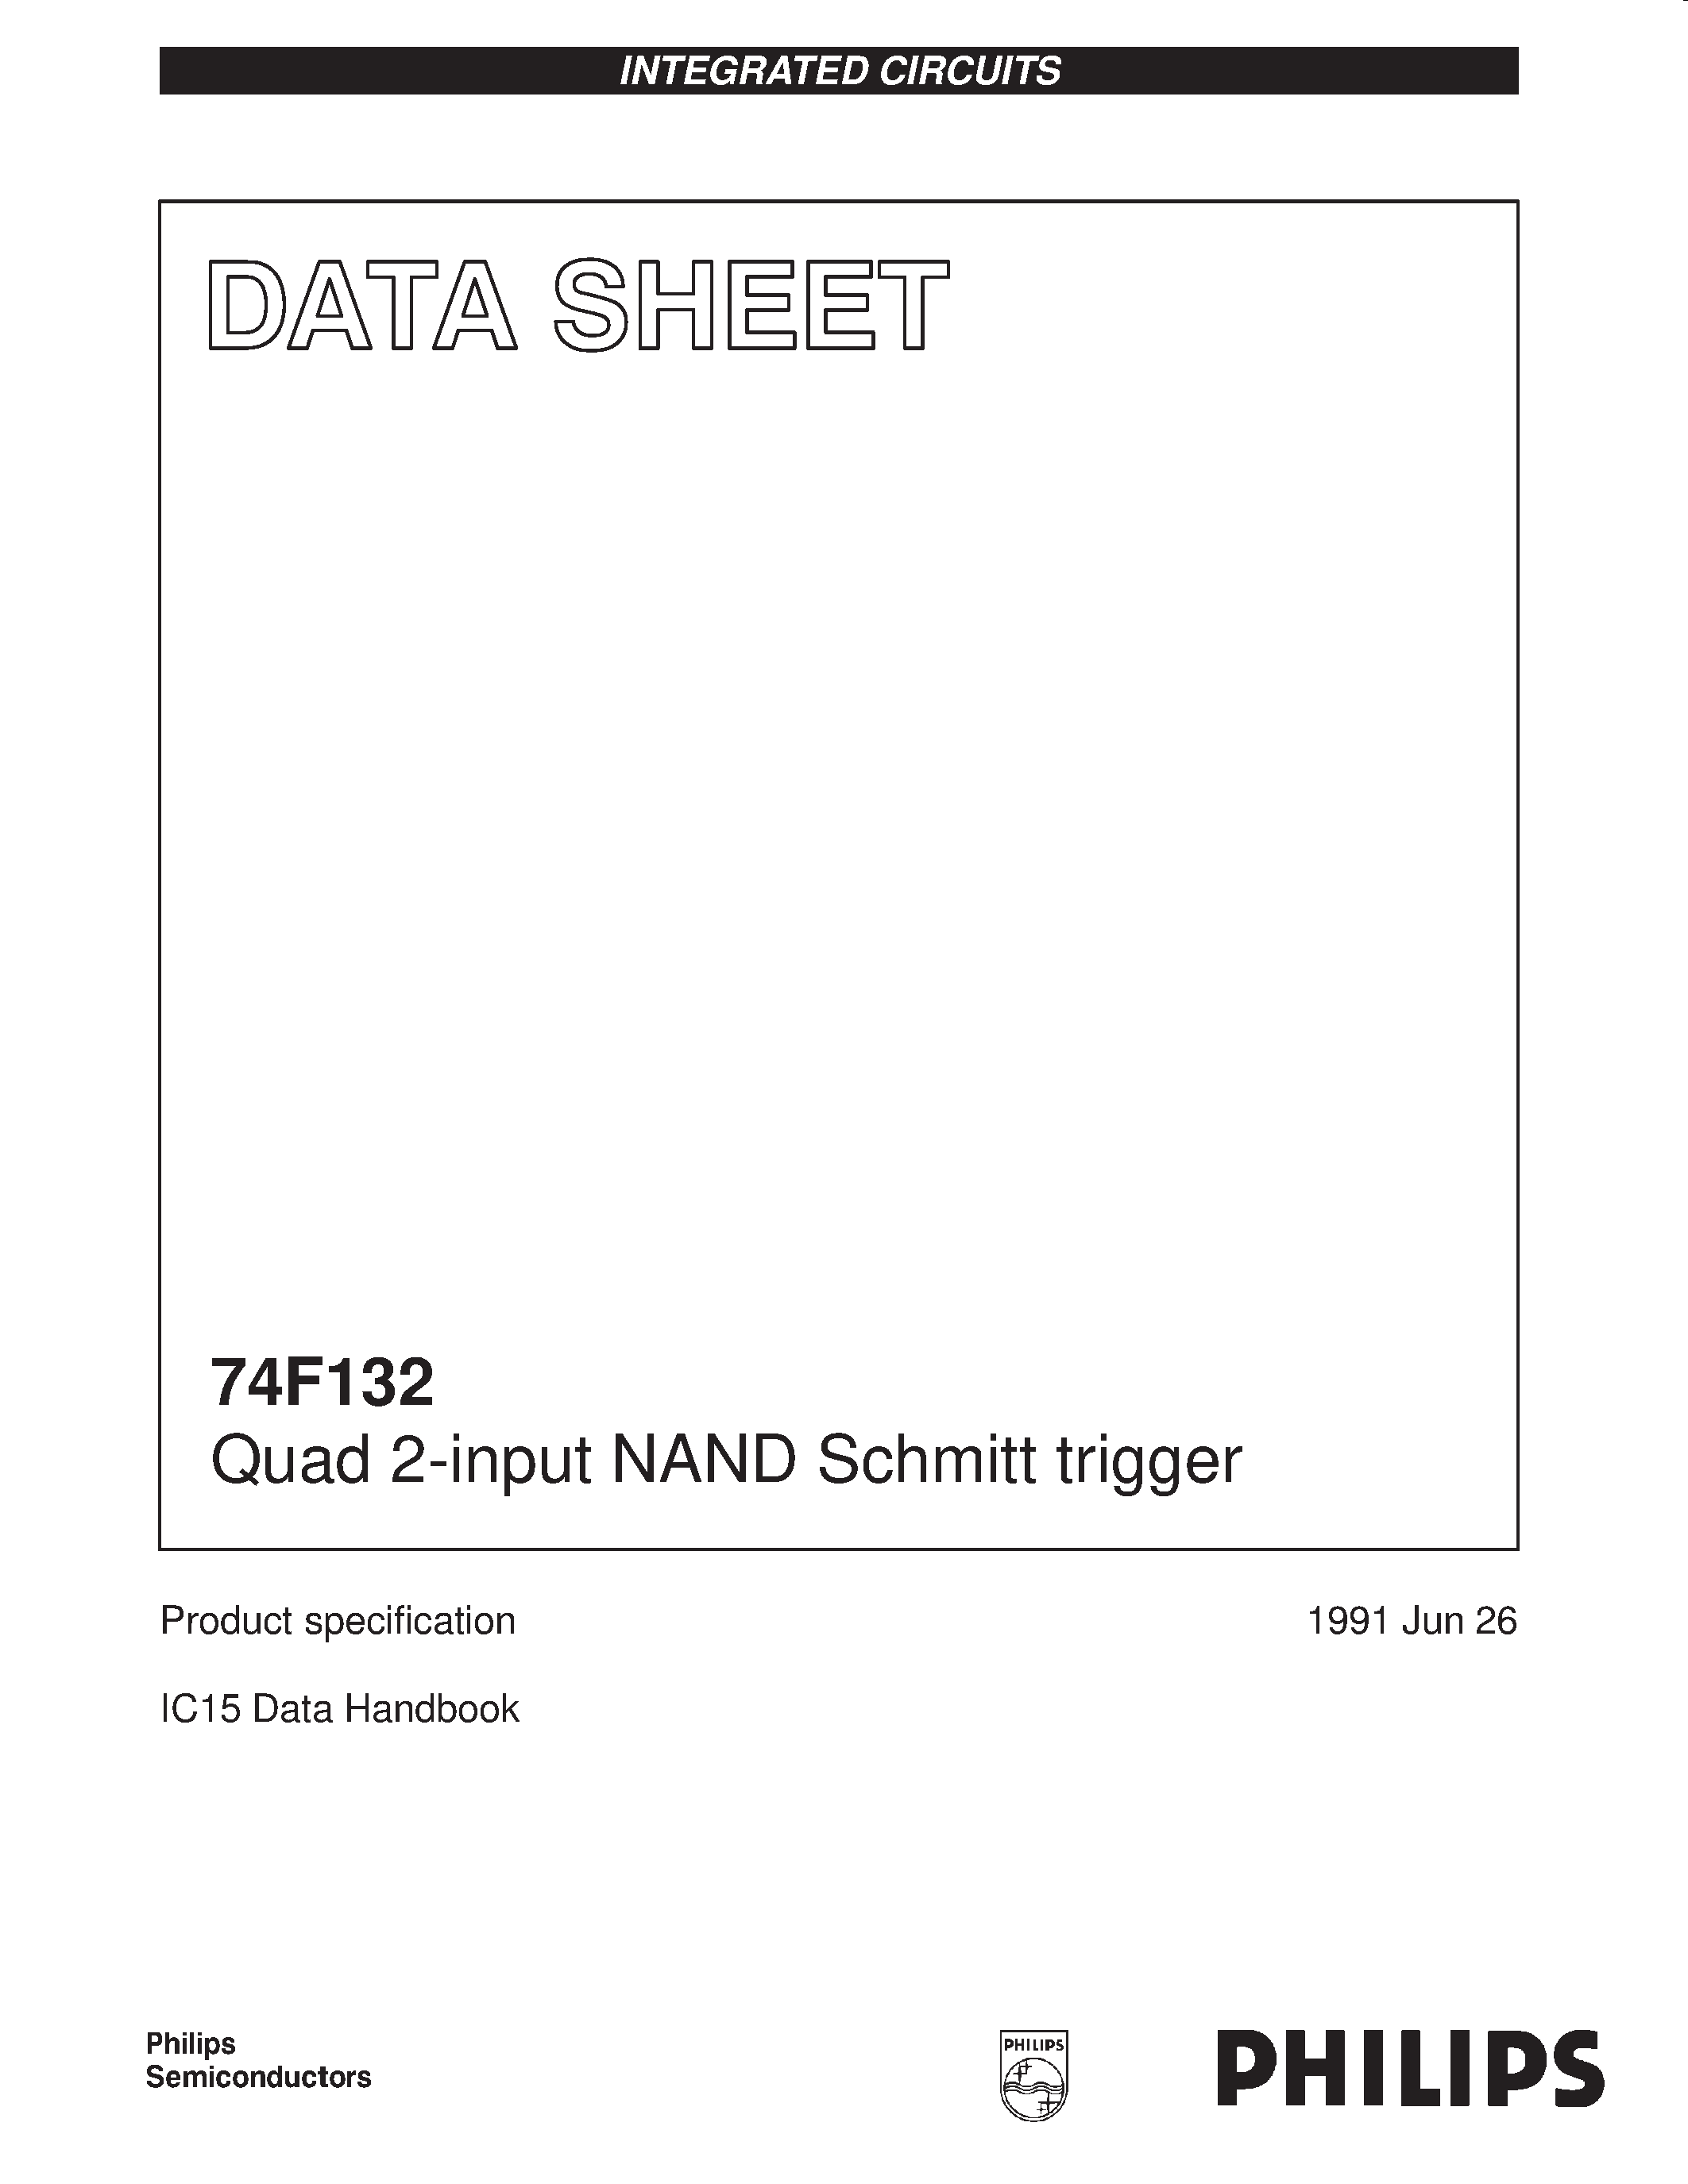 Даташит 74F132 - Quad 2-input NAND Schmitt trigger страница 1